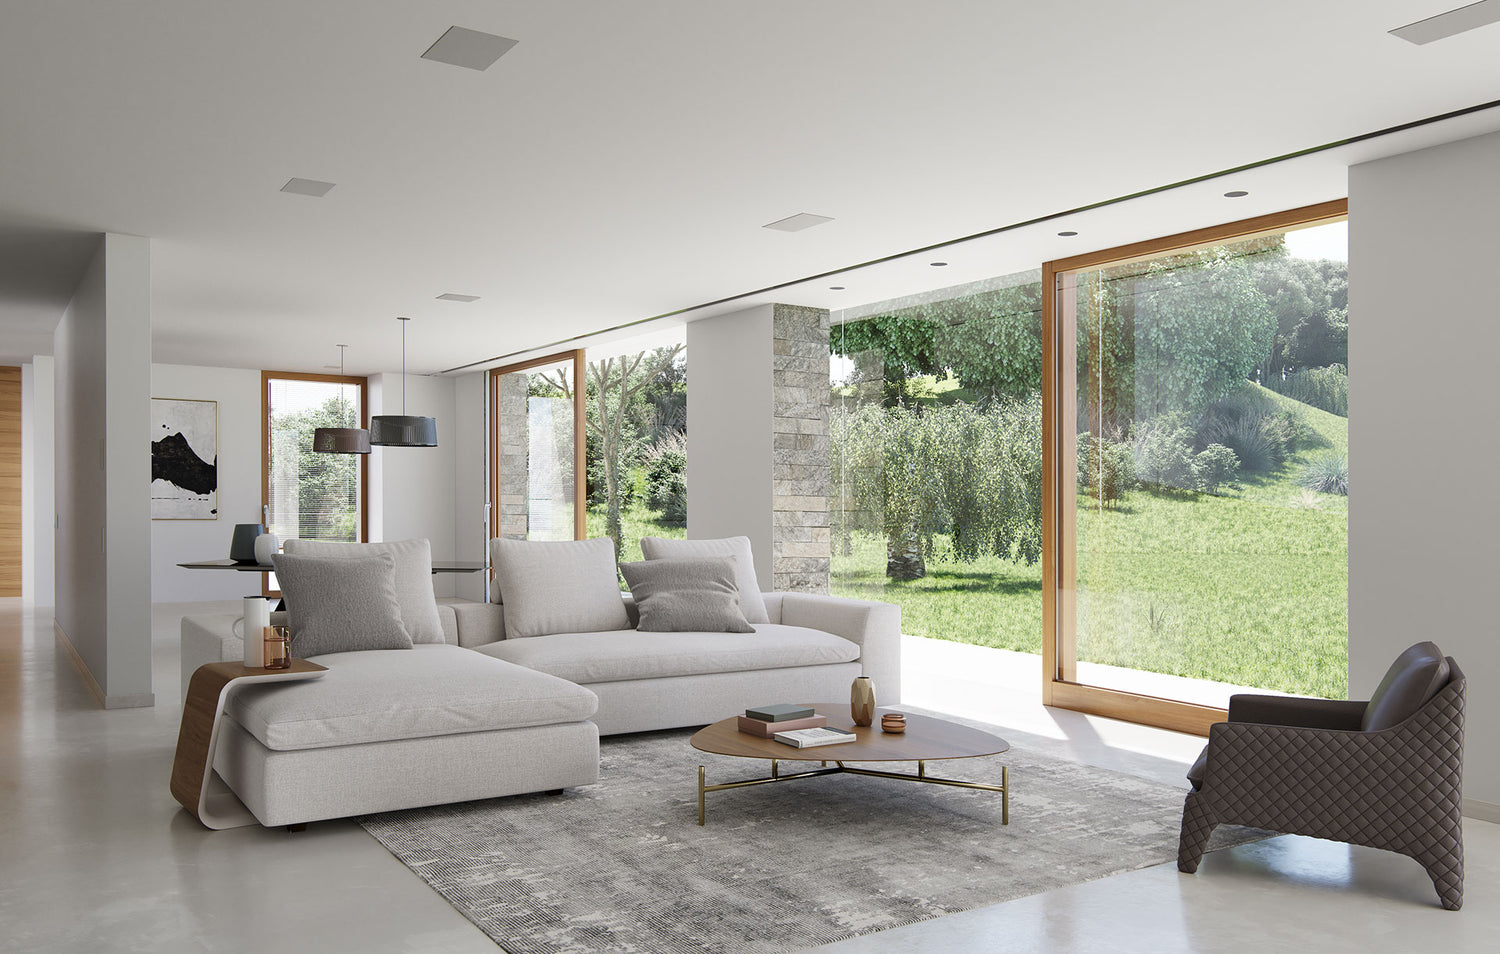 A modern living room featuring Modloft furniture.